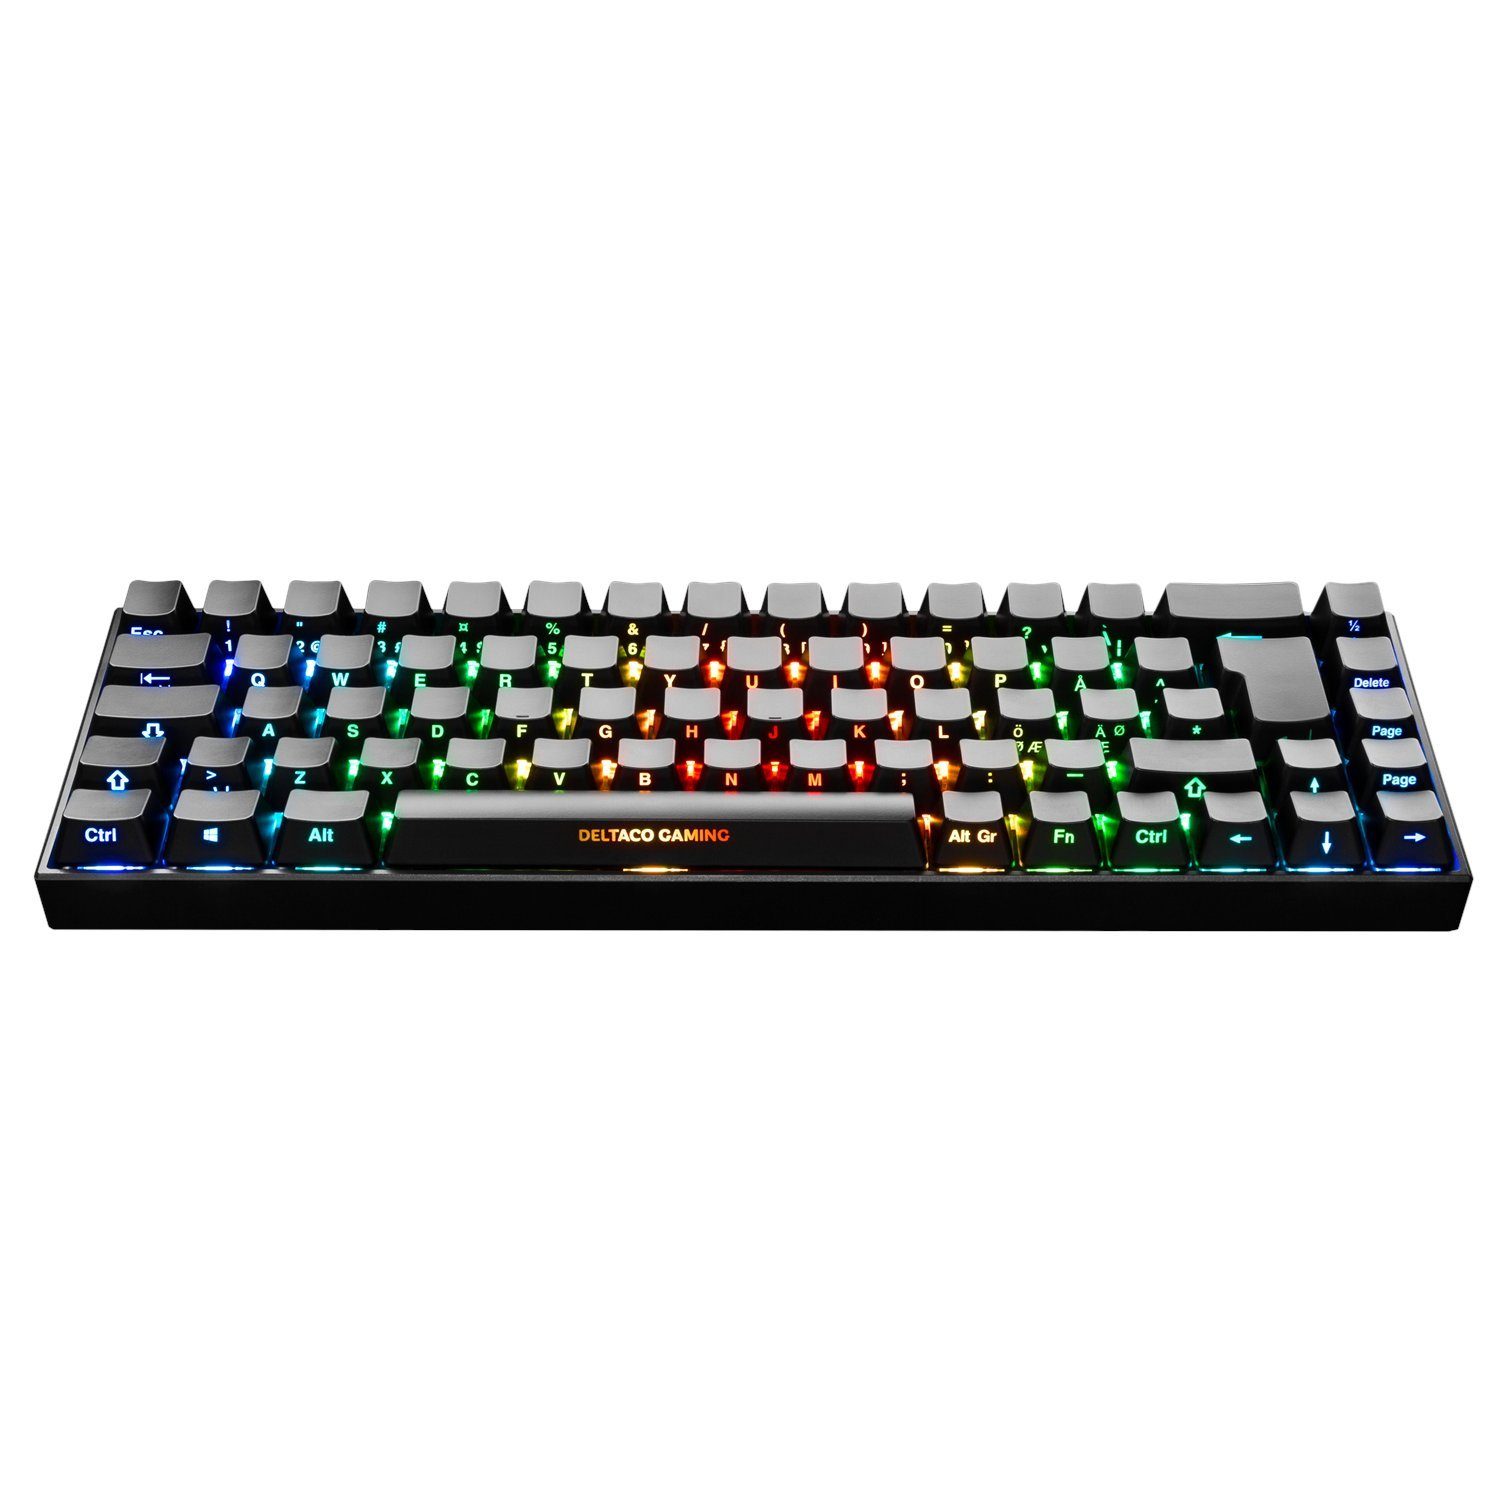 DELTACO Drahtlose Mechanische Gaming Tastatur Deutsches Layout Gaming-Tastatur (inkl. 5 Jahre Herstellergarantie) schwarz